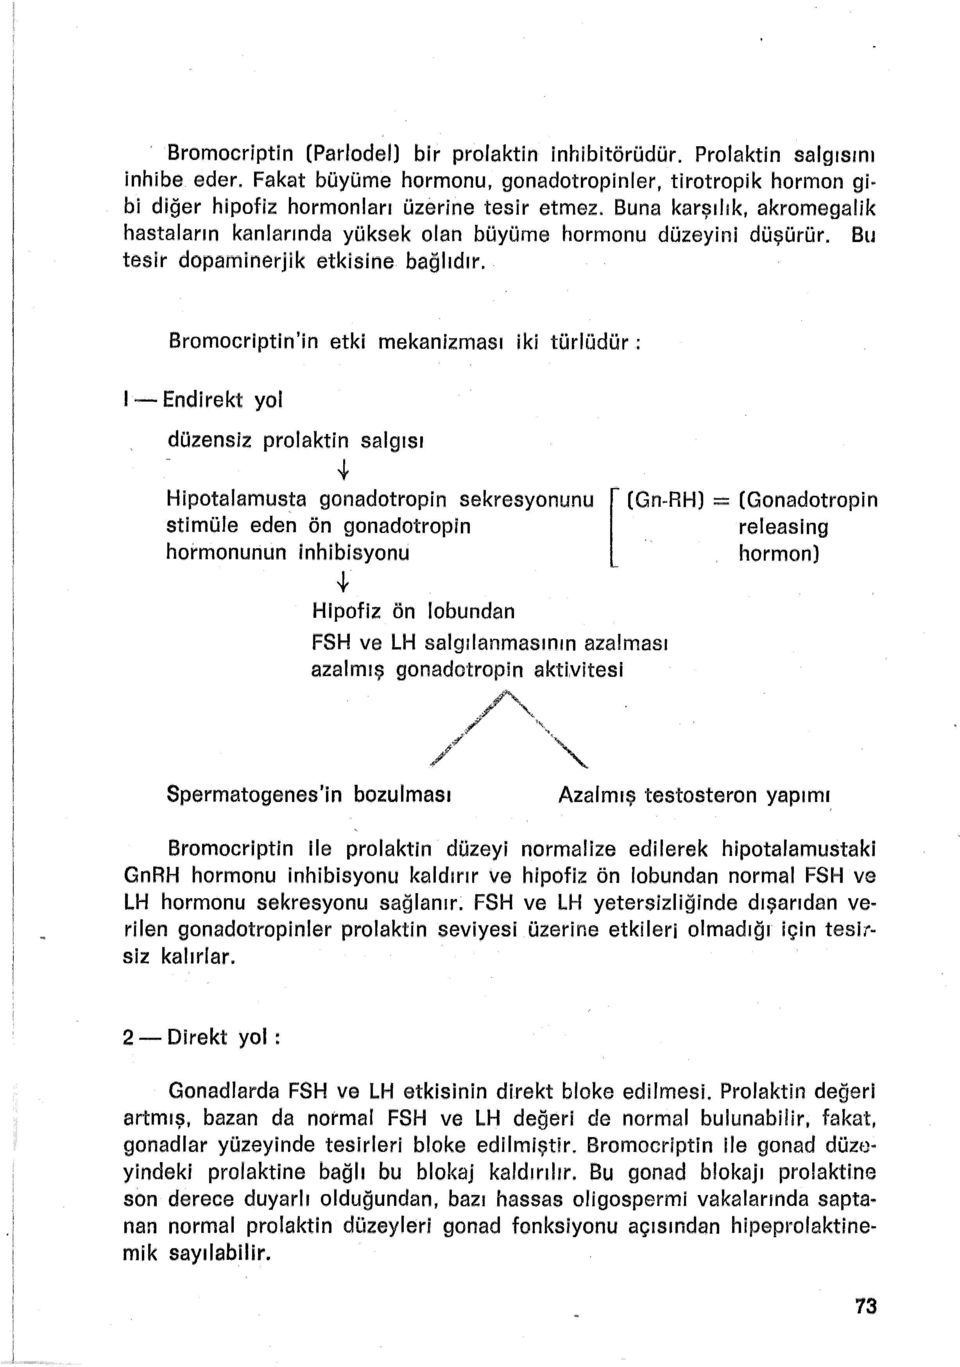 Bromocriptin'in etki mekanizması iki türlüdür : 1- Endirekt yol düzensiz prolaktin salgısı.+ Hipotalamusta gonadotropin sekresyonunu stimüle eden ön gonadotropin hormonunun inhibisyonu..ı. Hipofiz ön lobundan FSH ve LH salgılanmasının azalması azalmış gonadotropin akuvitesi '""" / ' /' ',~, r -(G.